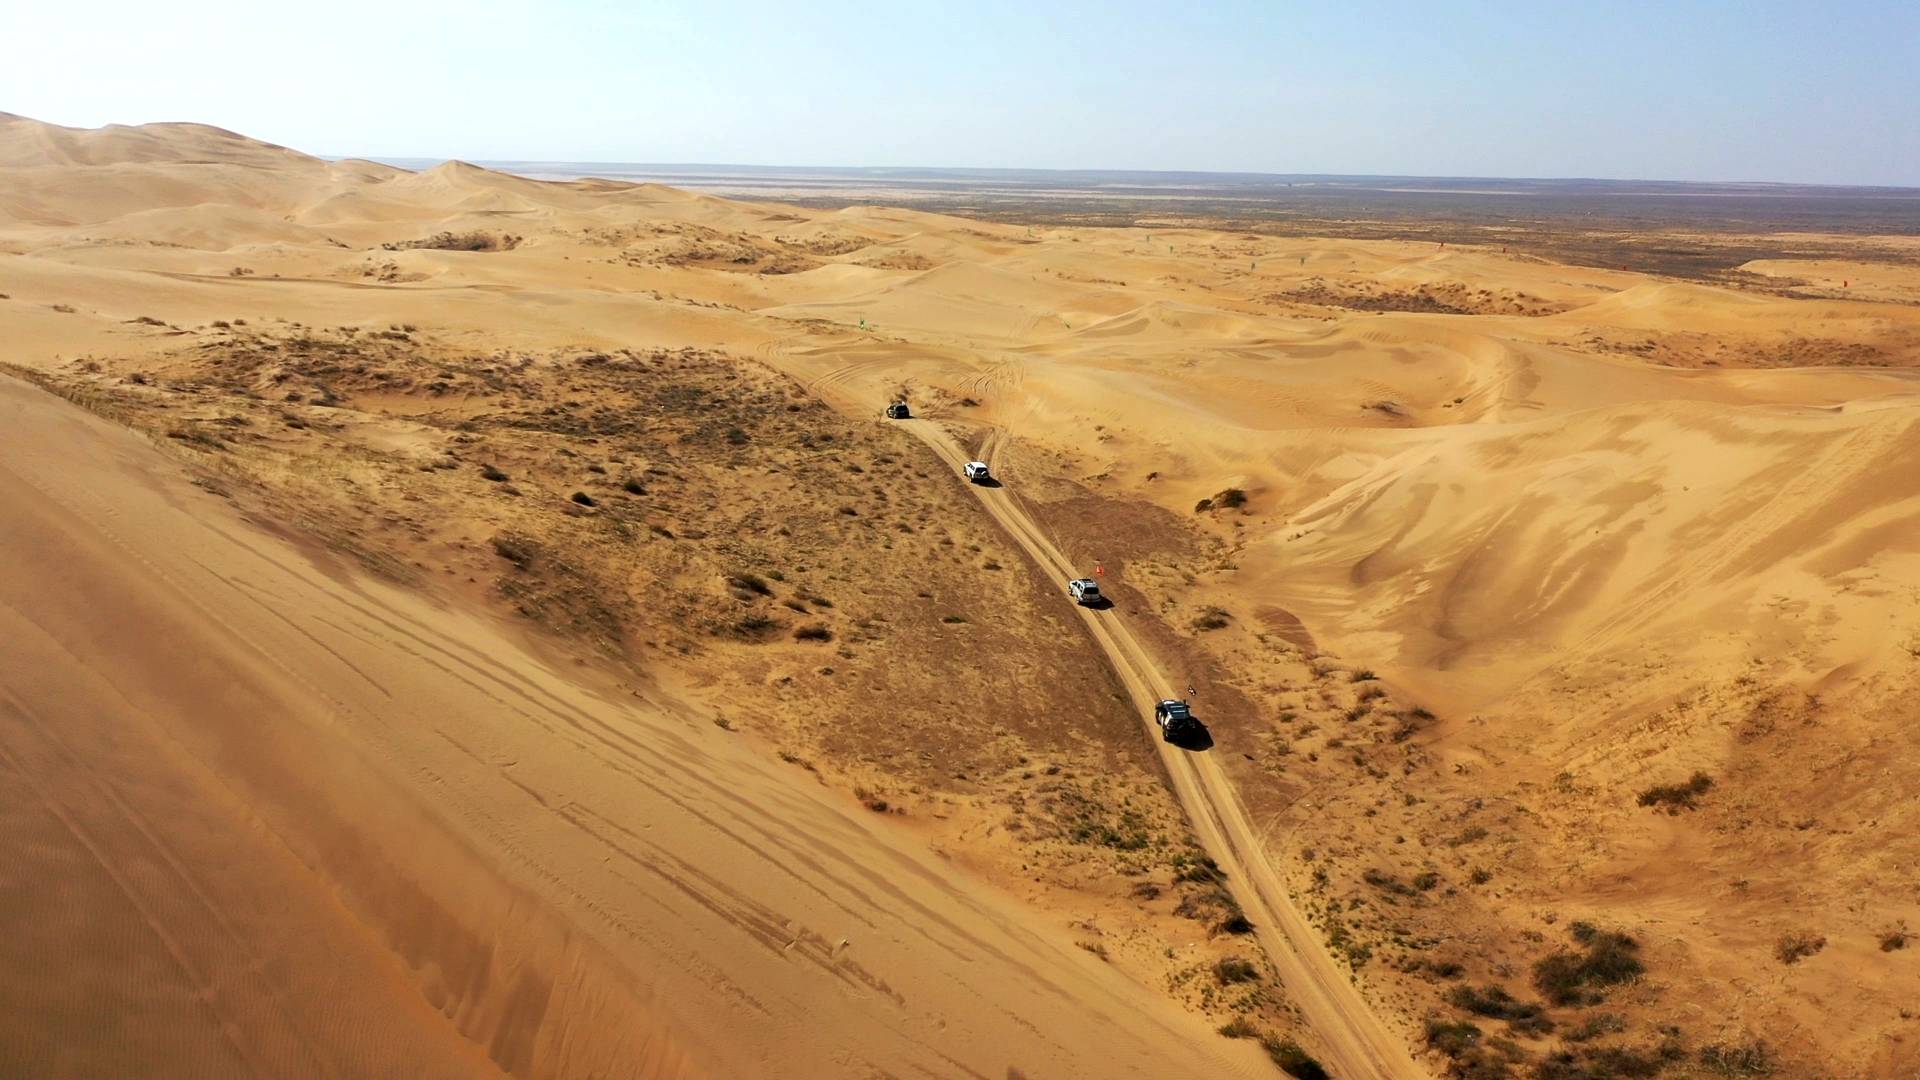 原创 徒步穿越八百里库布其沙漠纪实(5) ——梦想在路